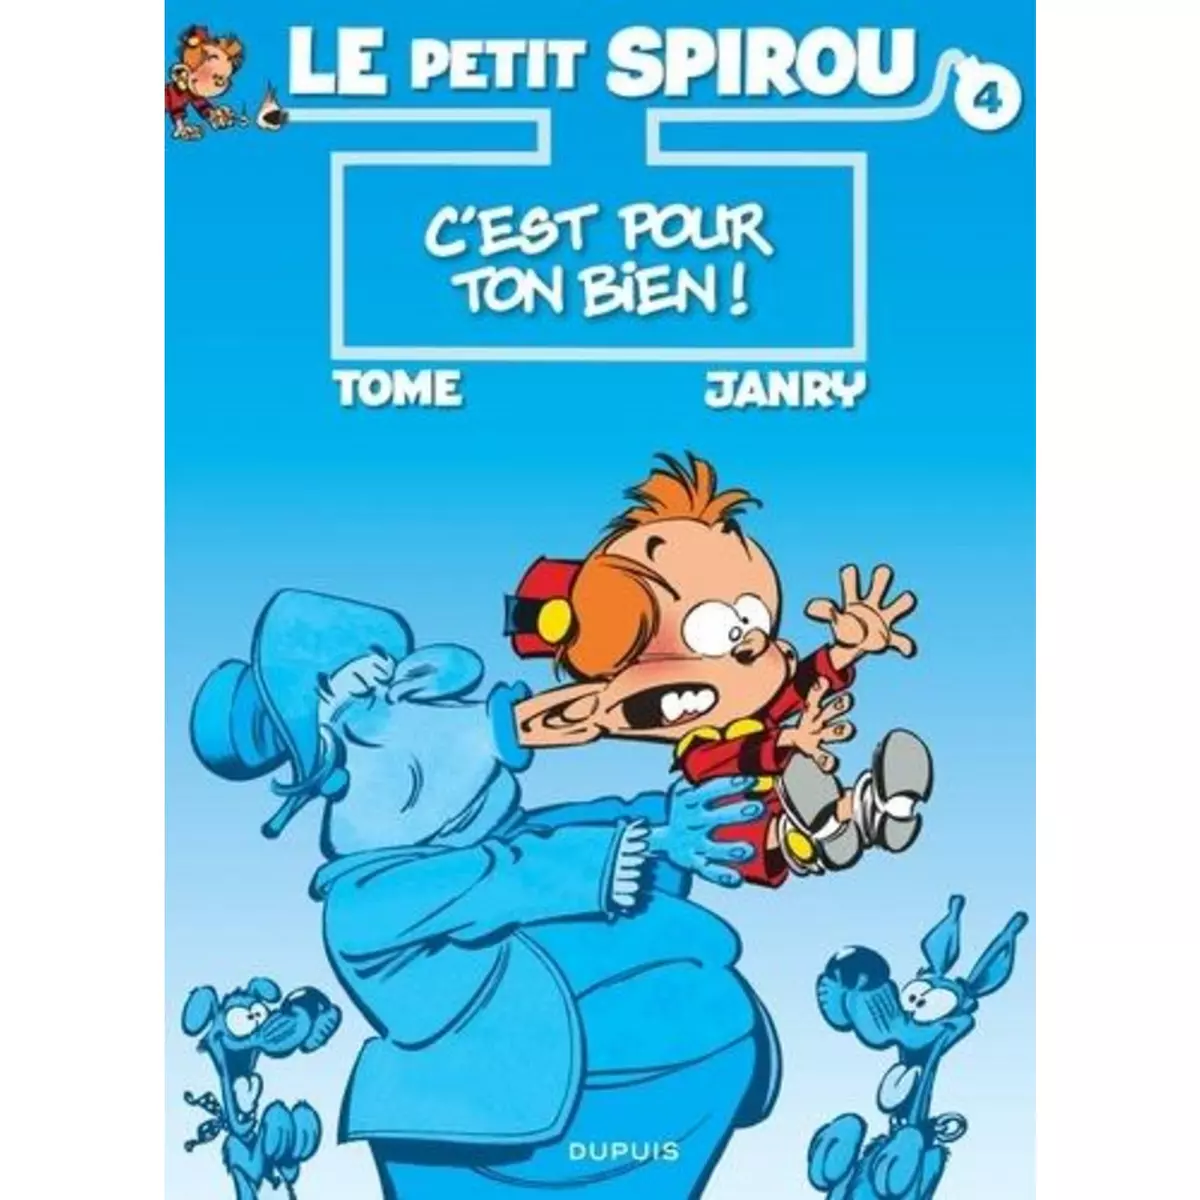  LE PETIT SPIROU TOME 4 : C'EST POUR TON BIEN !, Janry